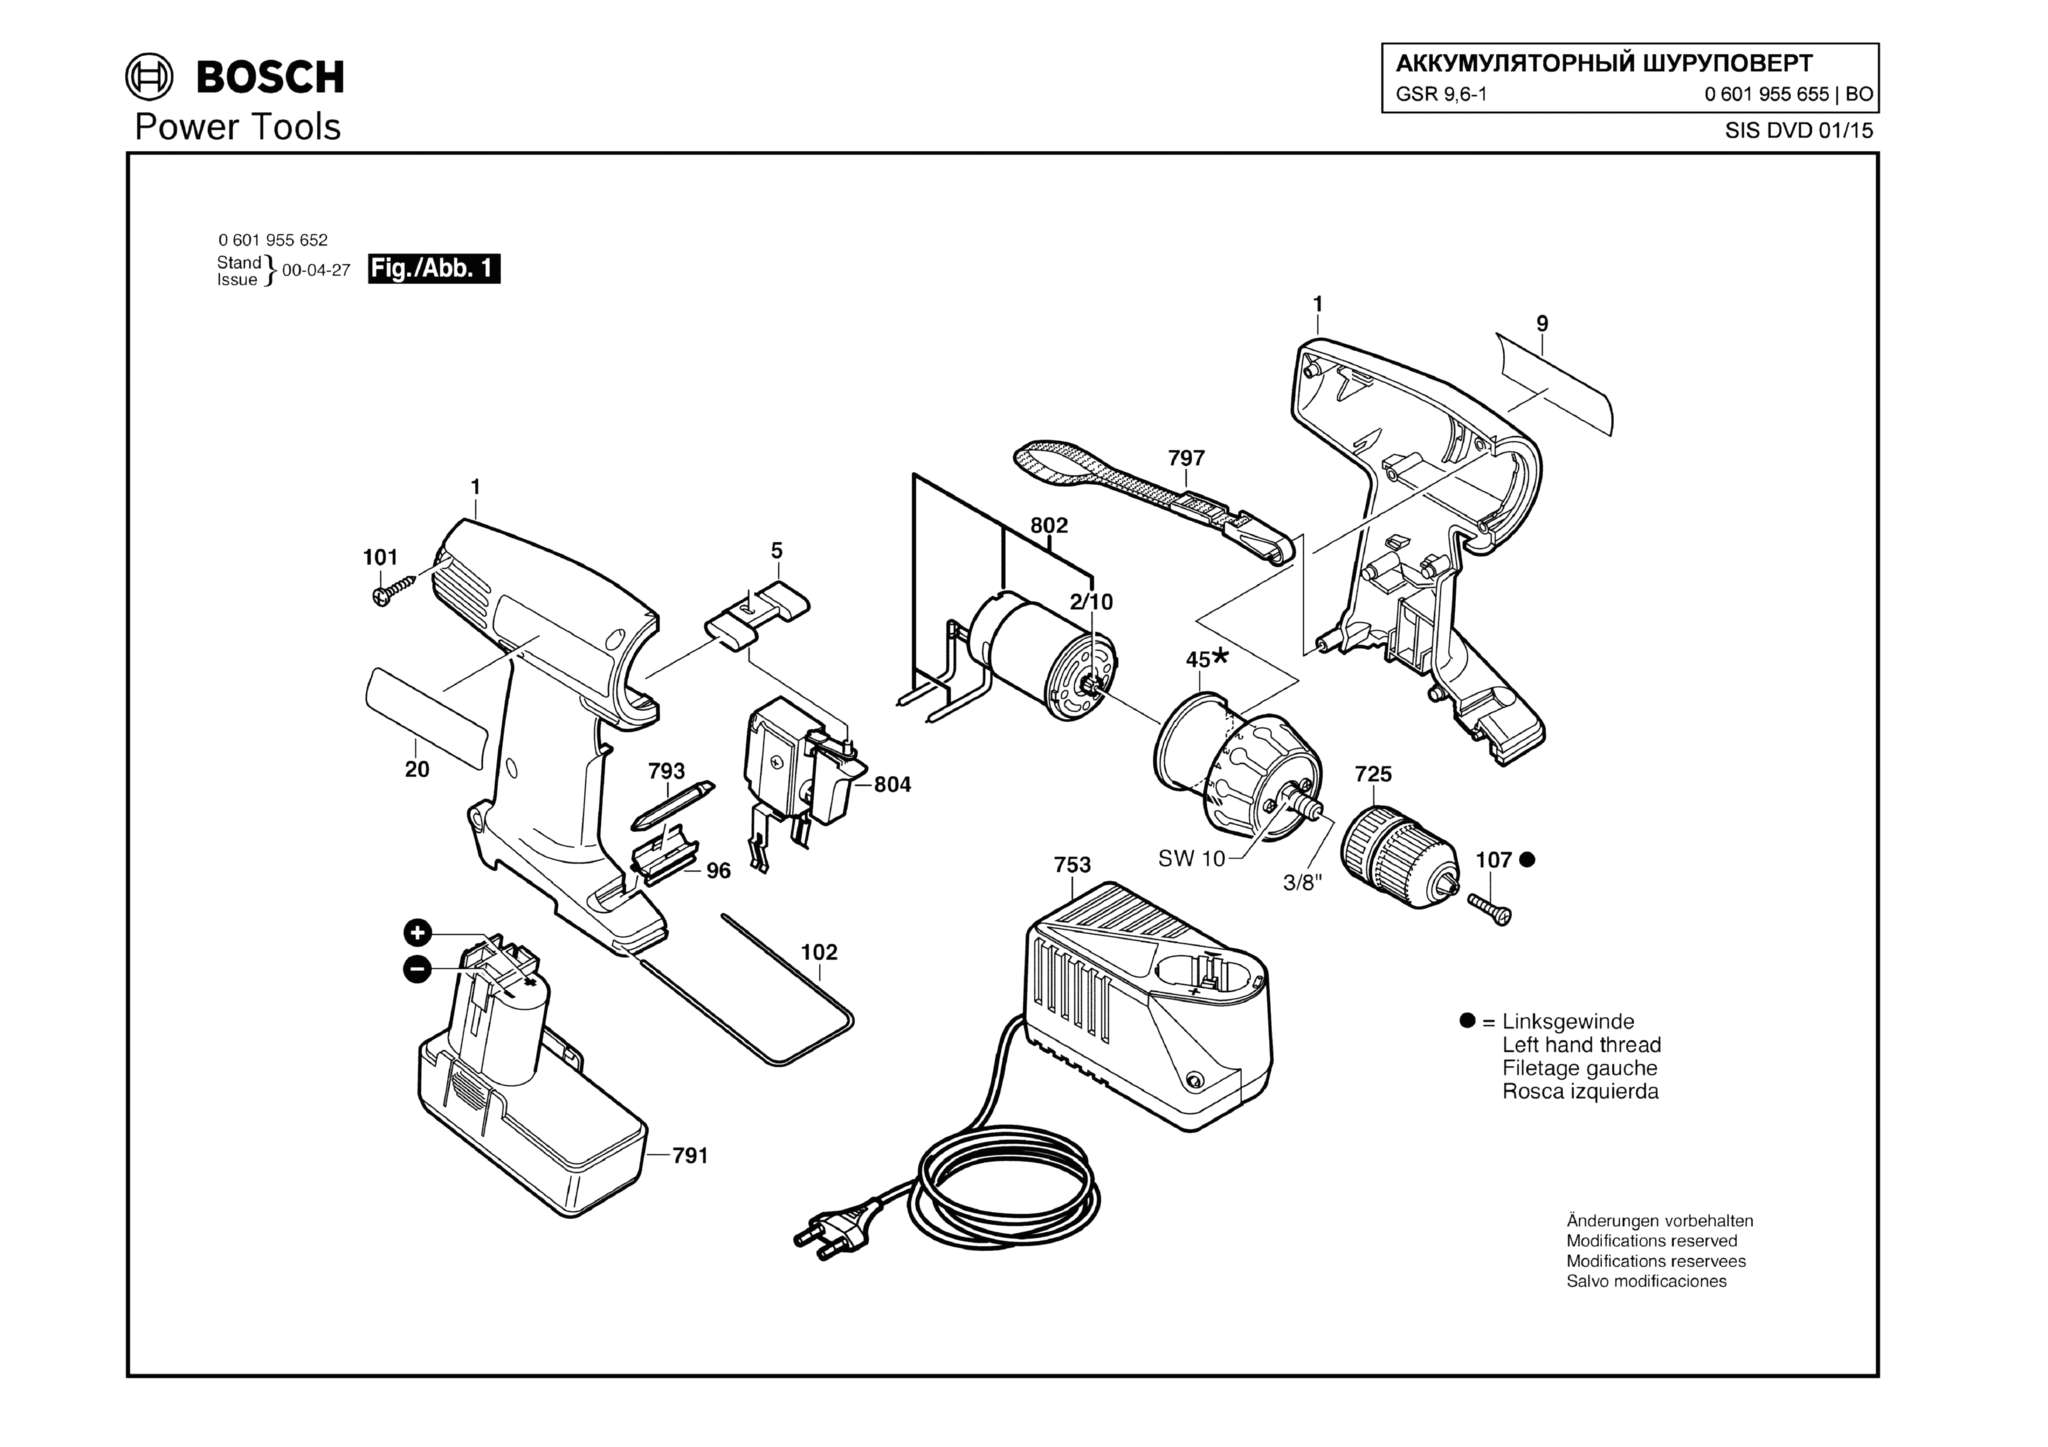 Запчасти, схема и деталировка Bosch GSR 9,6-1 (ТИП 0601955655)